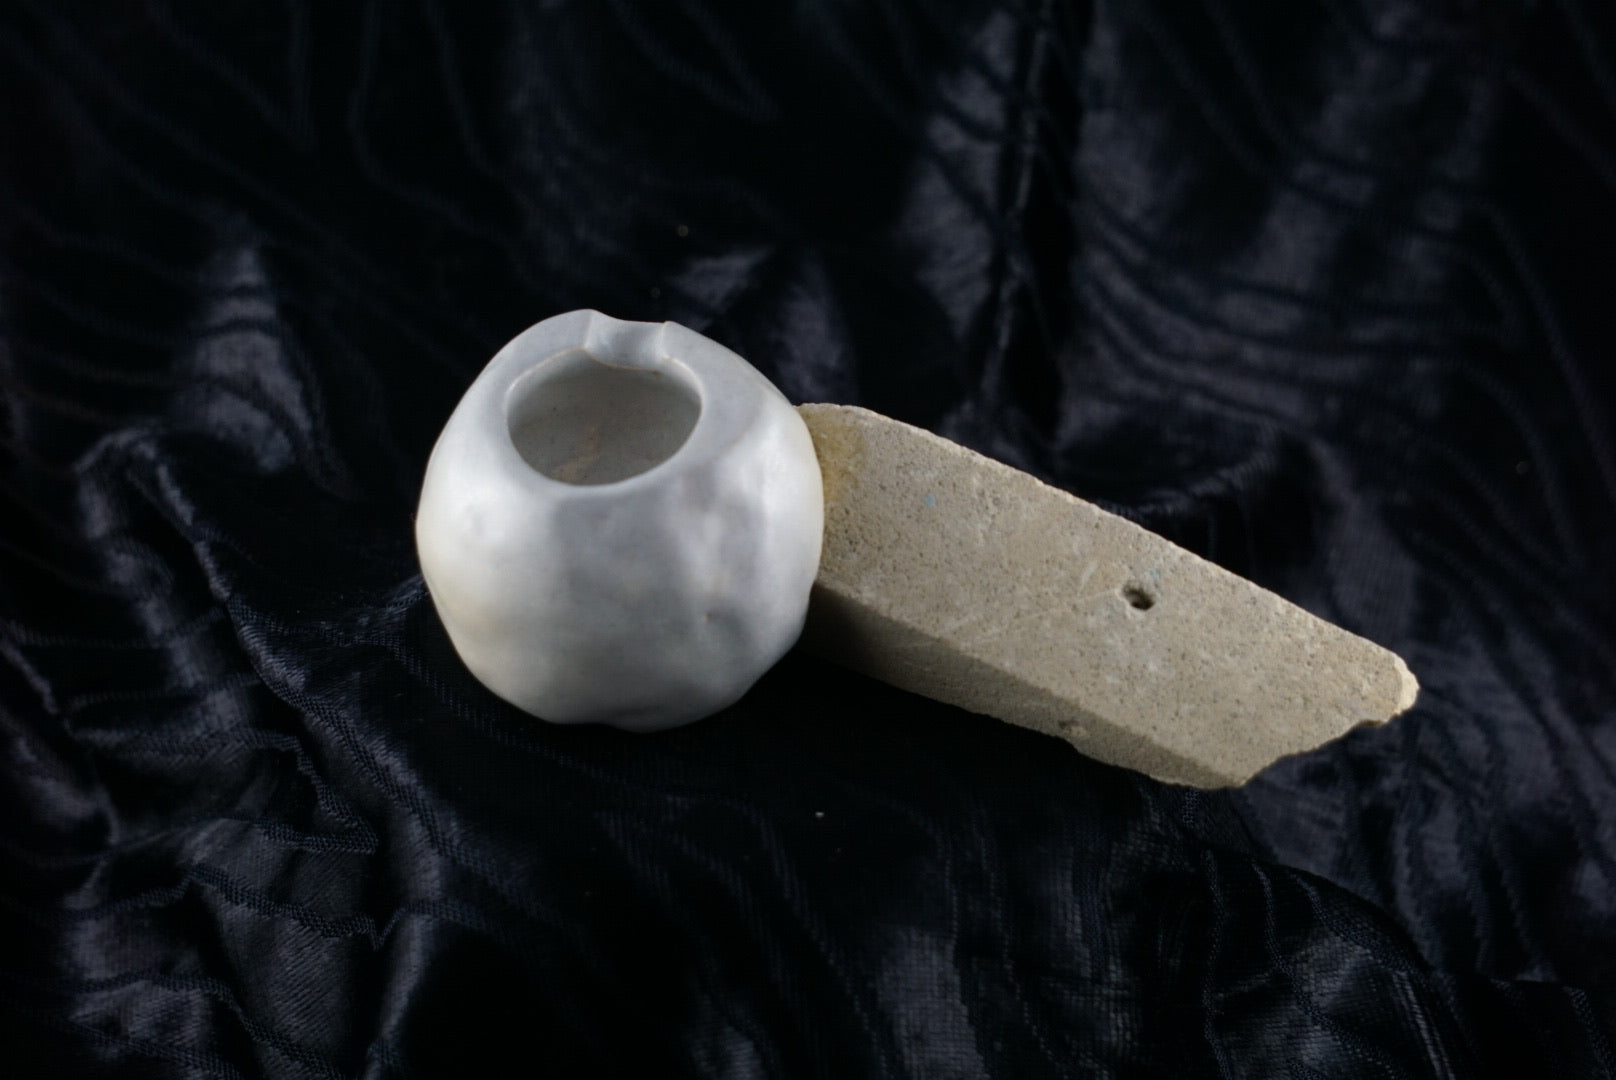 Small, handmade, grey ceramic ashtray molded around a piece of yellow brick